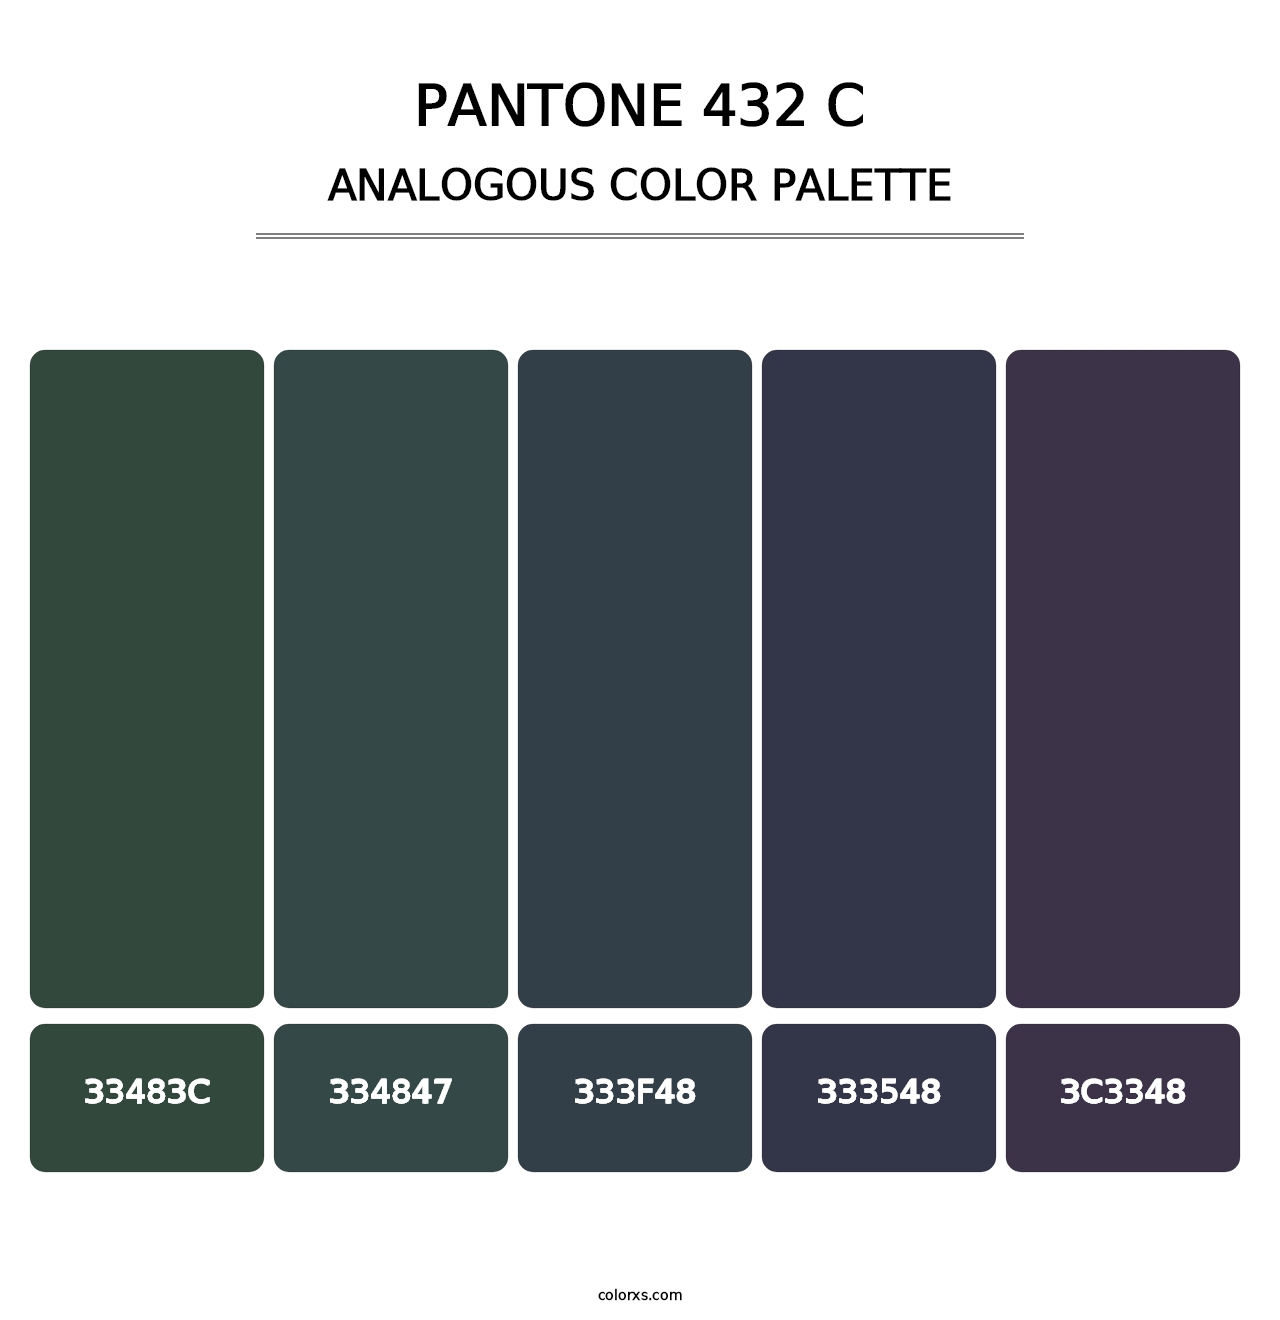 PANTONE 432 C - Analogous Color Palette